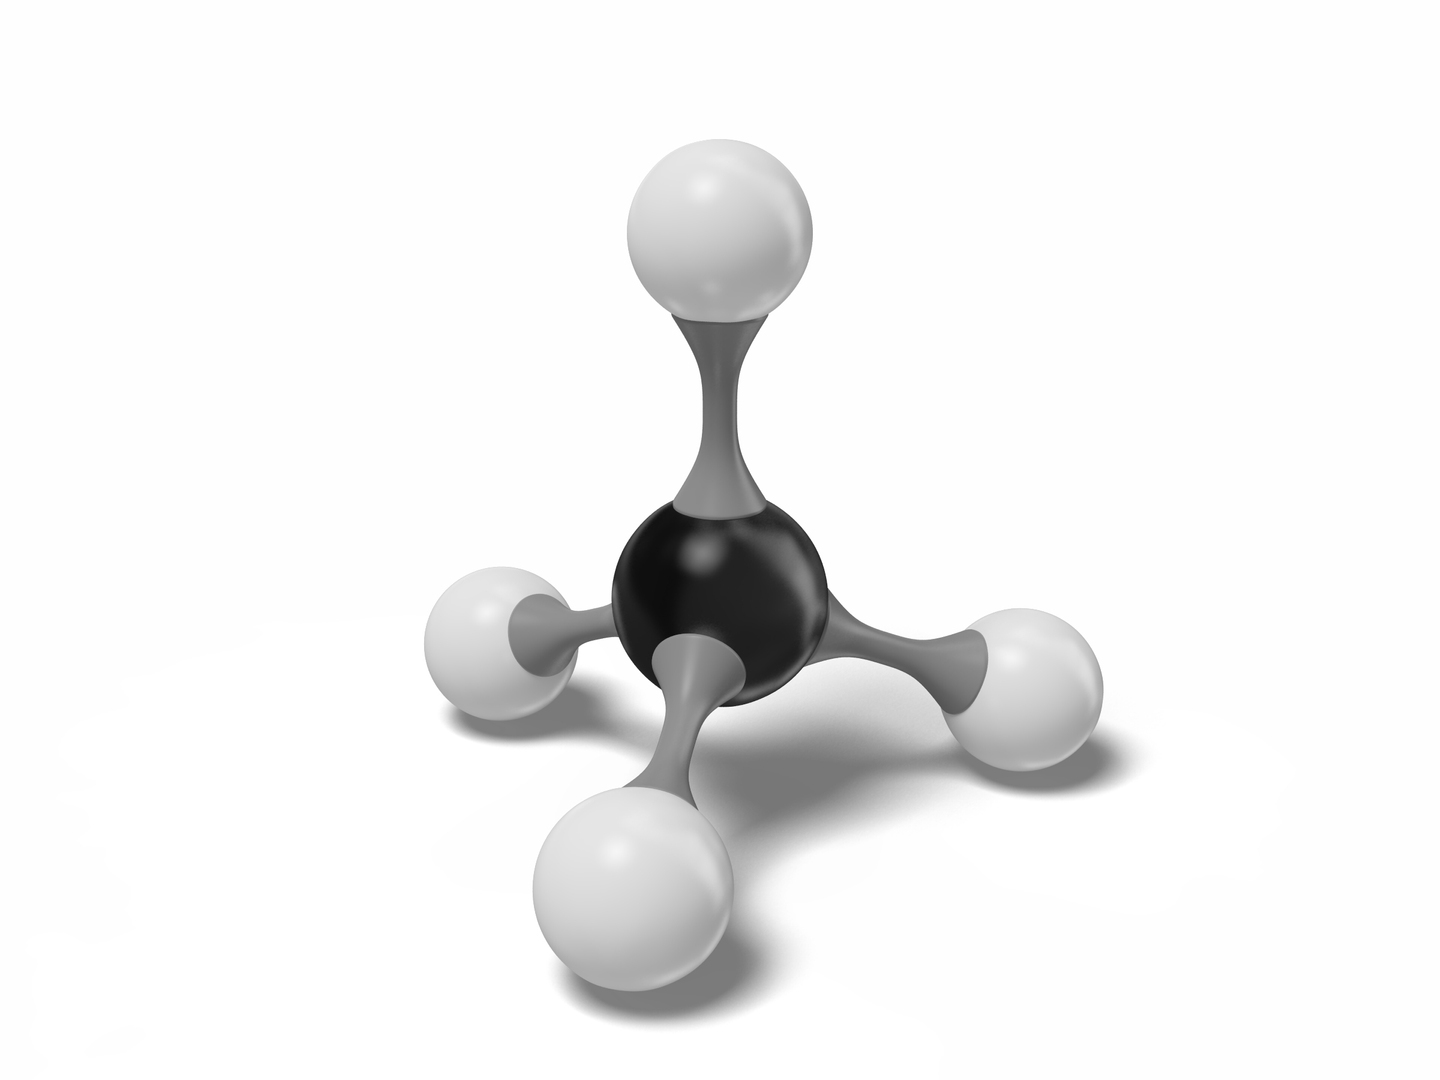 Methane Molecule Model